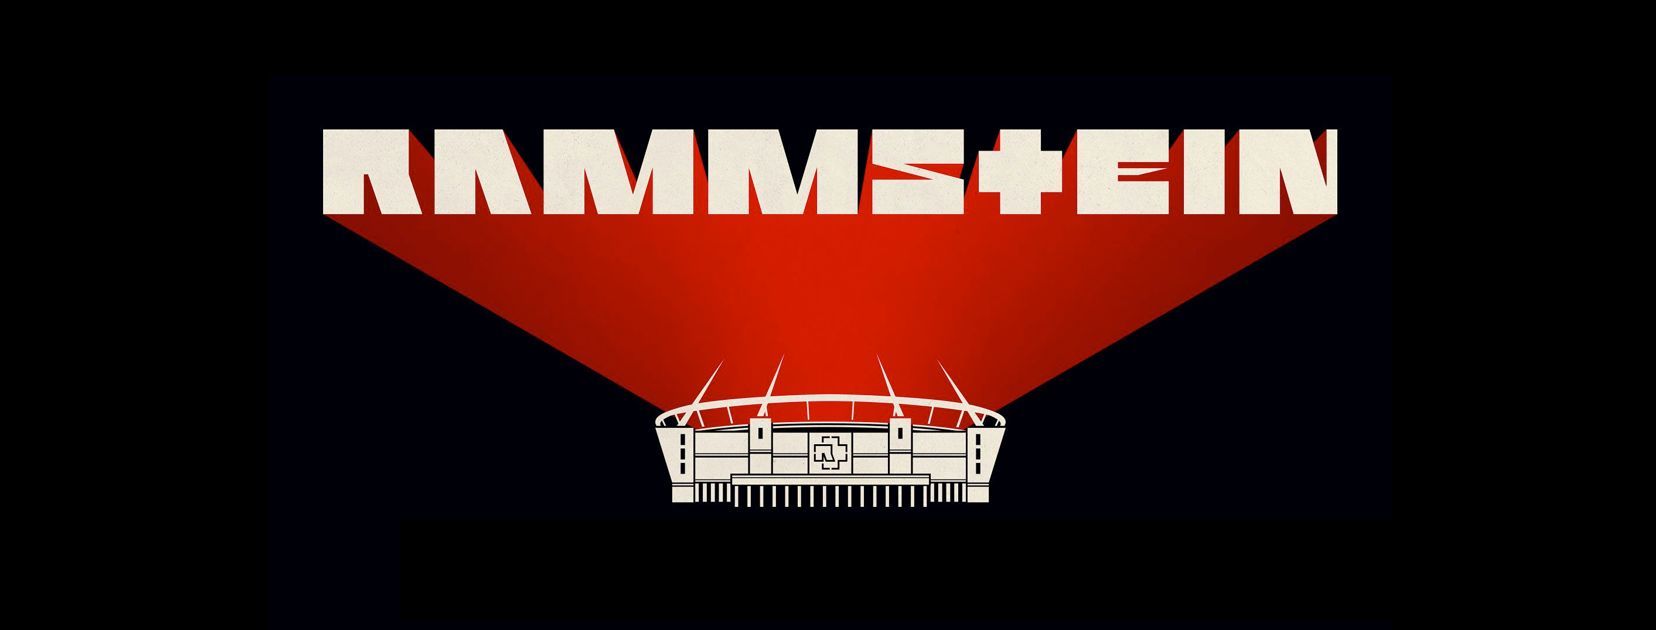 Rammstein kündigen Tourdaten für 2019 an